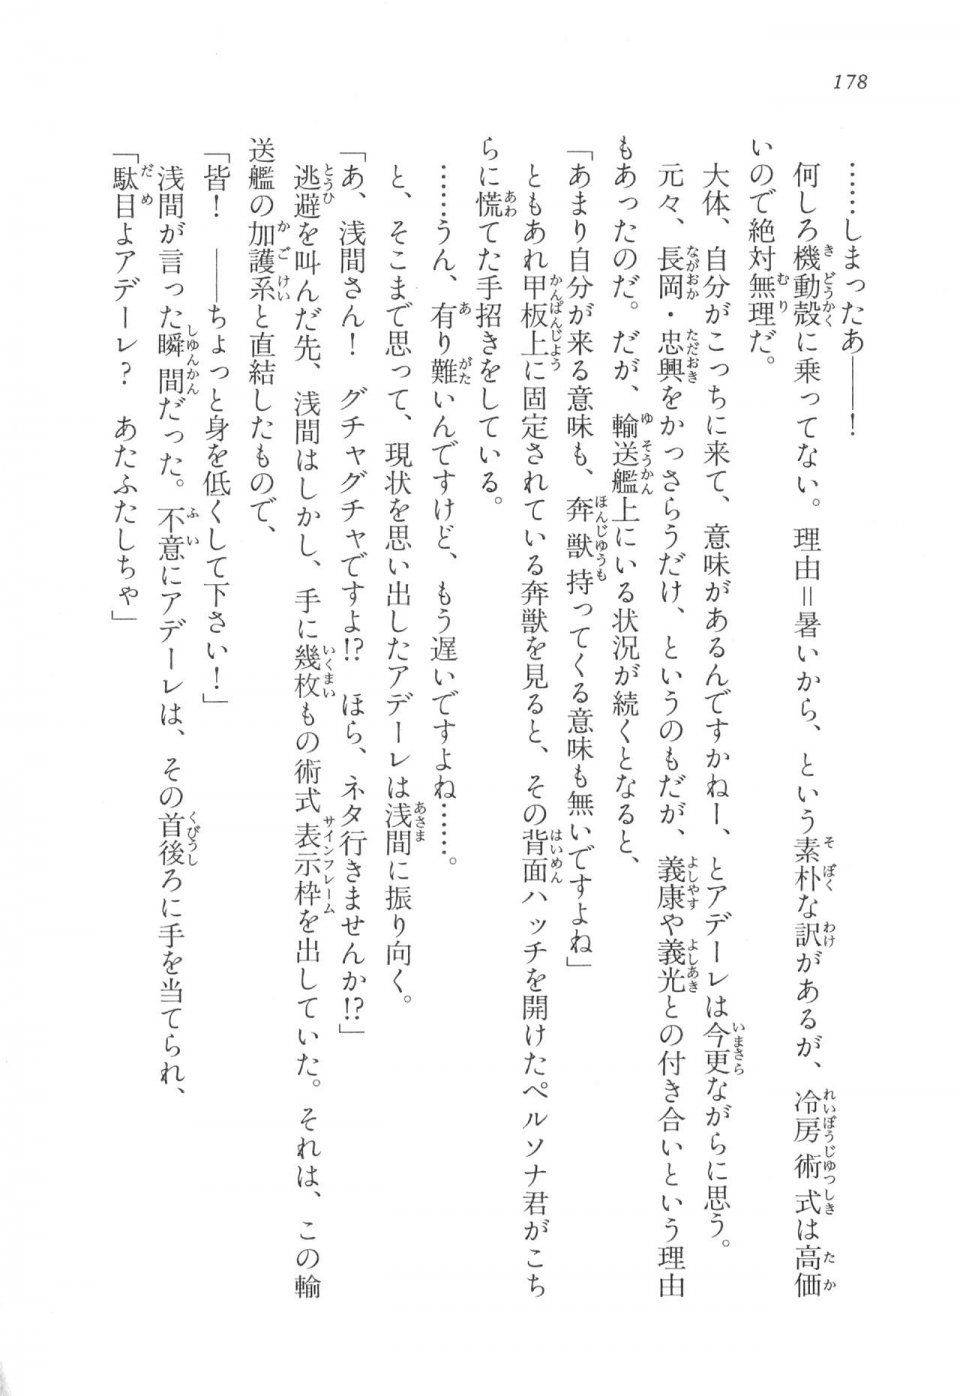 Kyoukai Senjou no Horizon LN Vol 17(7B) - Photo #178